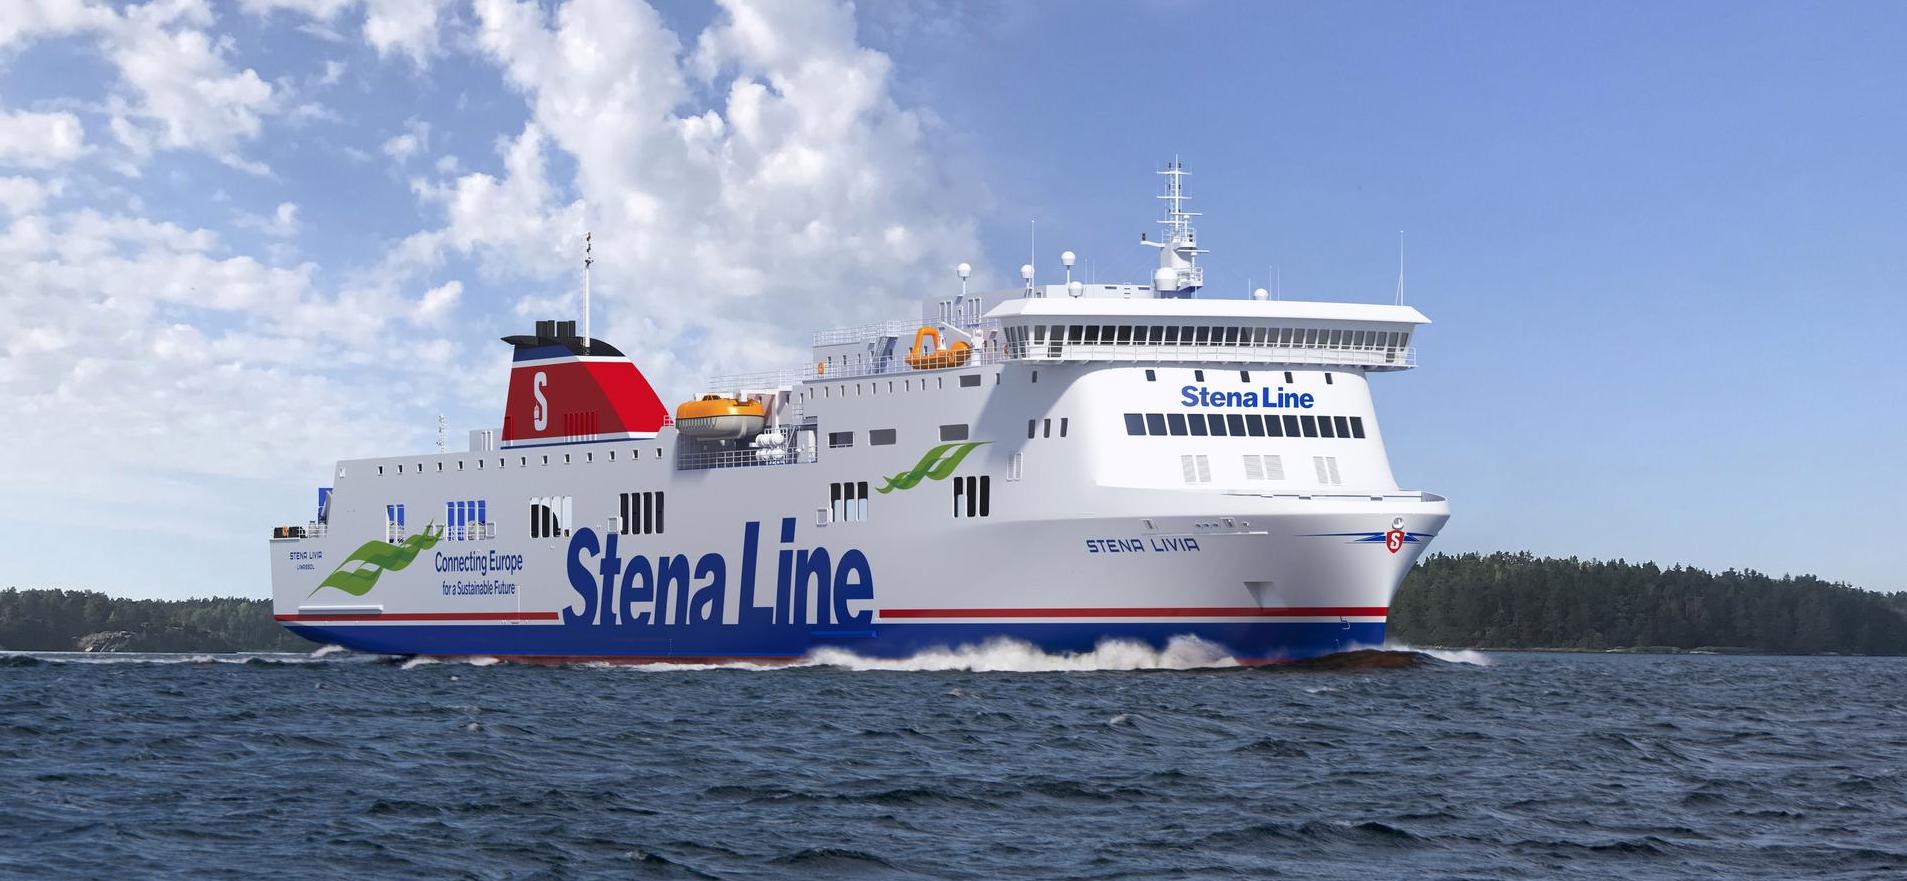 Foto af Stena Line - Stena Livia skib